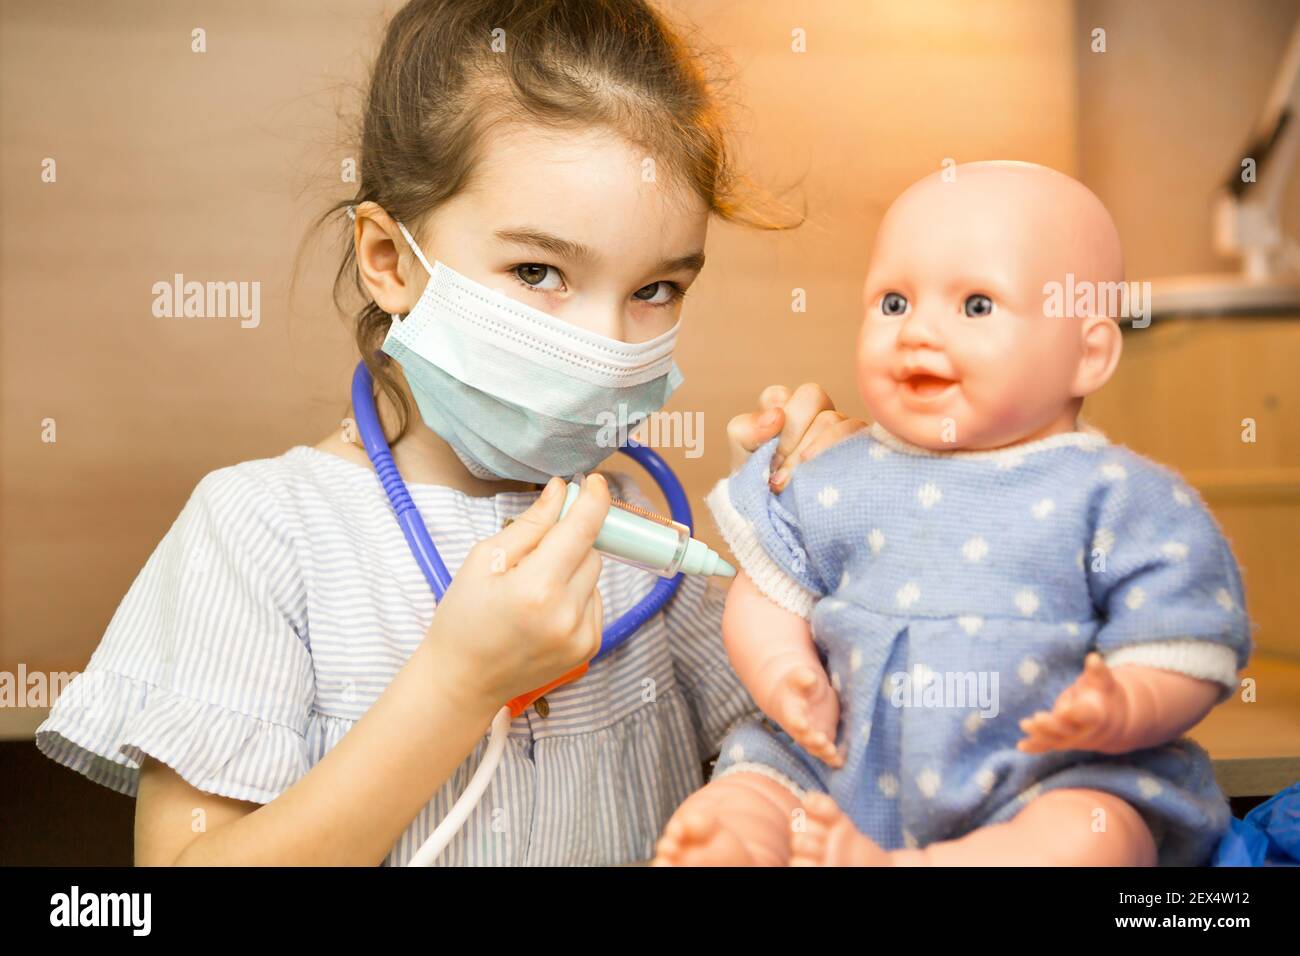 Ein Mädchen mit einer Puppe spielt Arzt, macht eine Spritze Impfung in der  Hand. Impfung, Impfkalender, Impfstoff, Berufsspiel. Injecti der  Krankenschwester Stockfotografie - Alamy